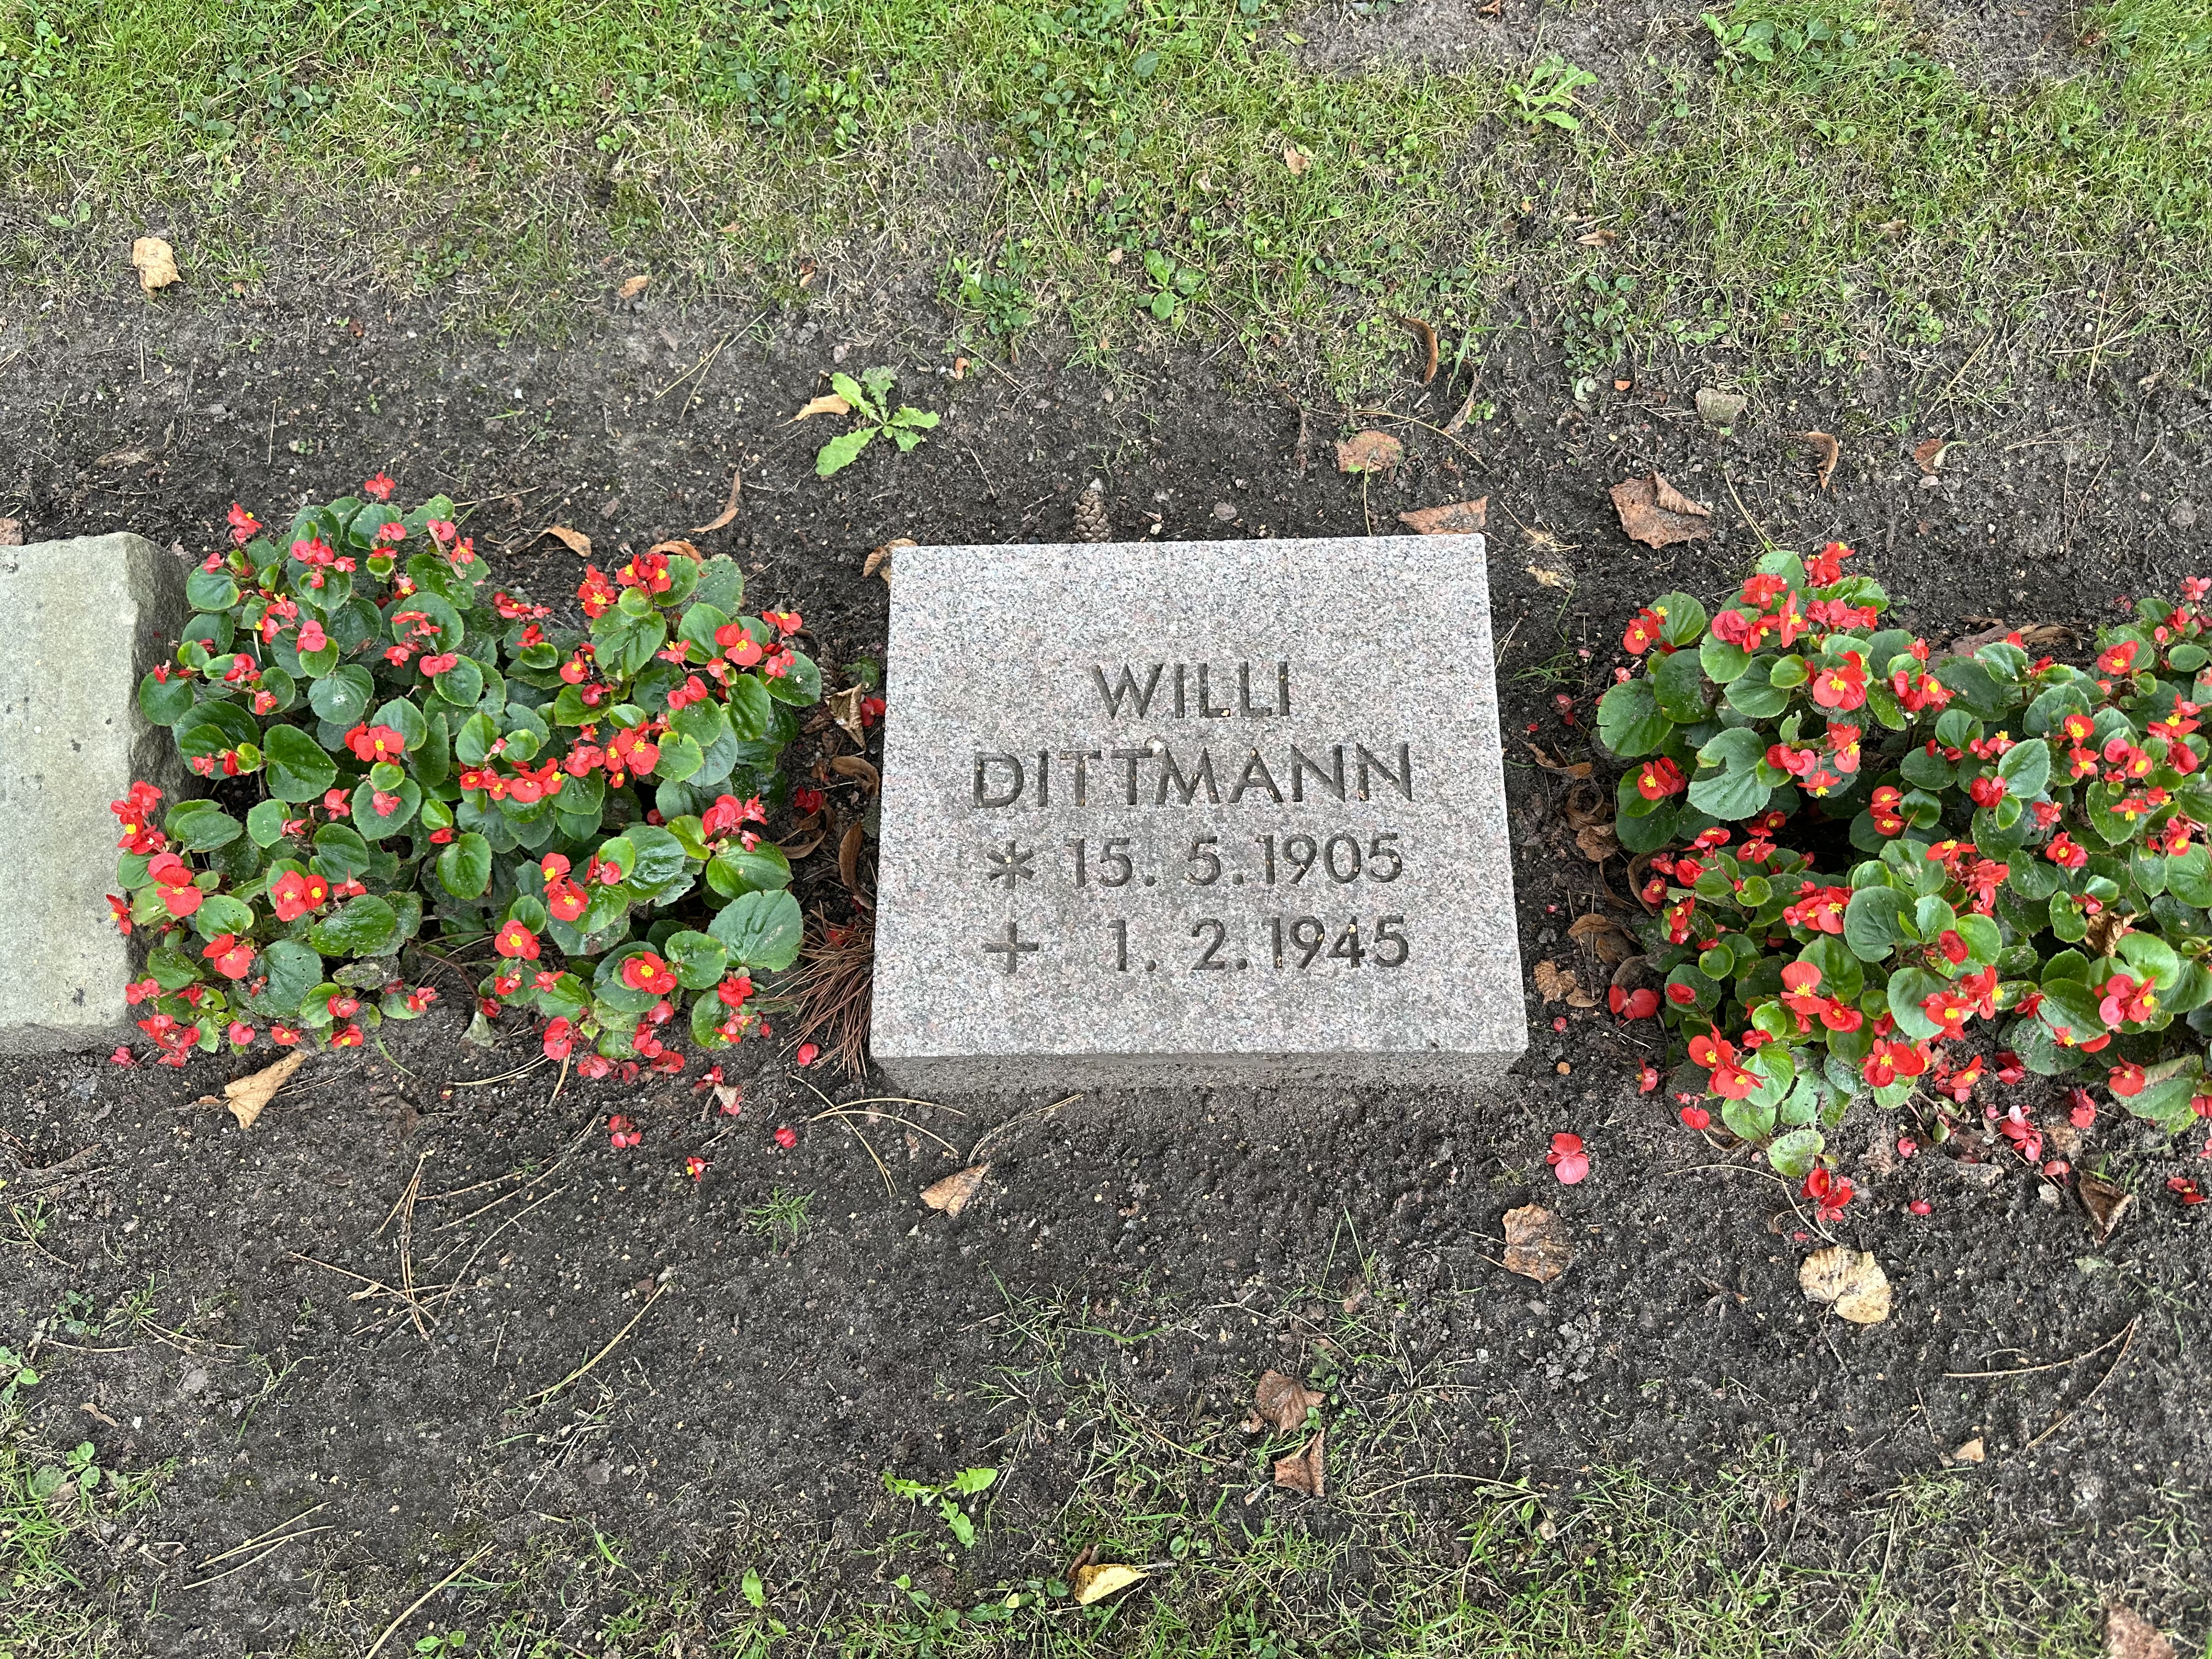 Neue Grabplatte auf dem Friedhof Ohlsdorf. Willy Dittmann, 15.5.1905, 1.2.1945